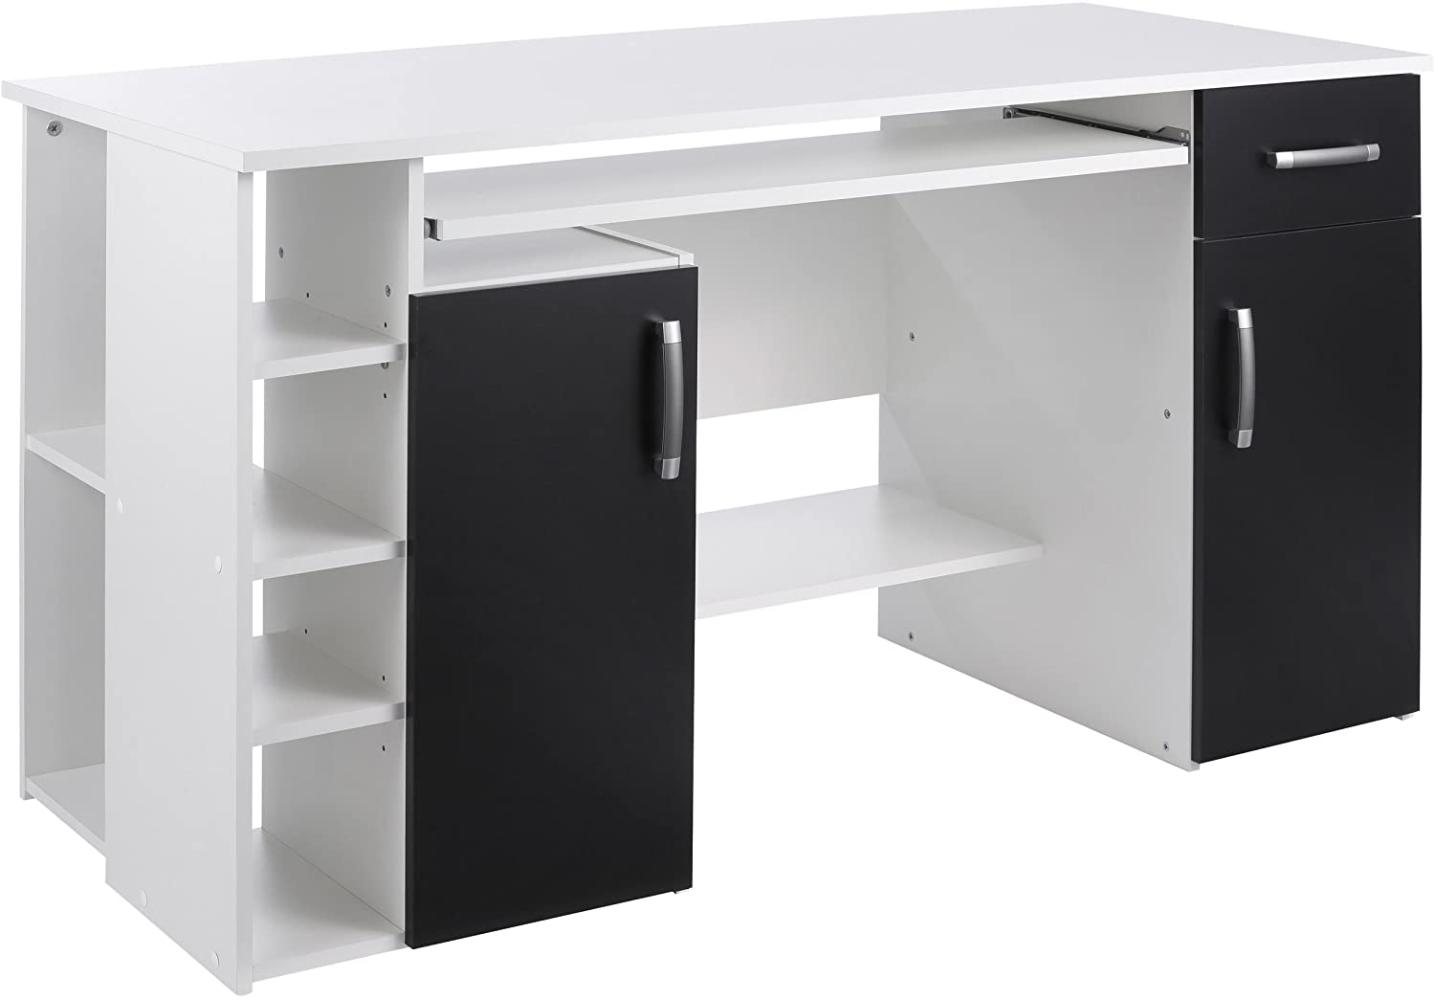 Computertisch / Schreibtisch / PC-Tisch weiß-schwarz - weiß - schwarz Bild 1